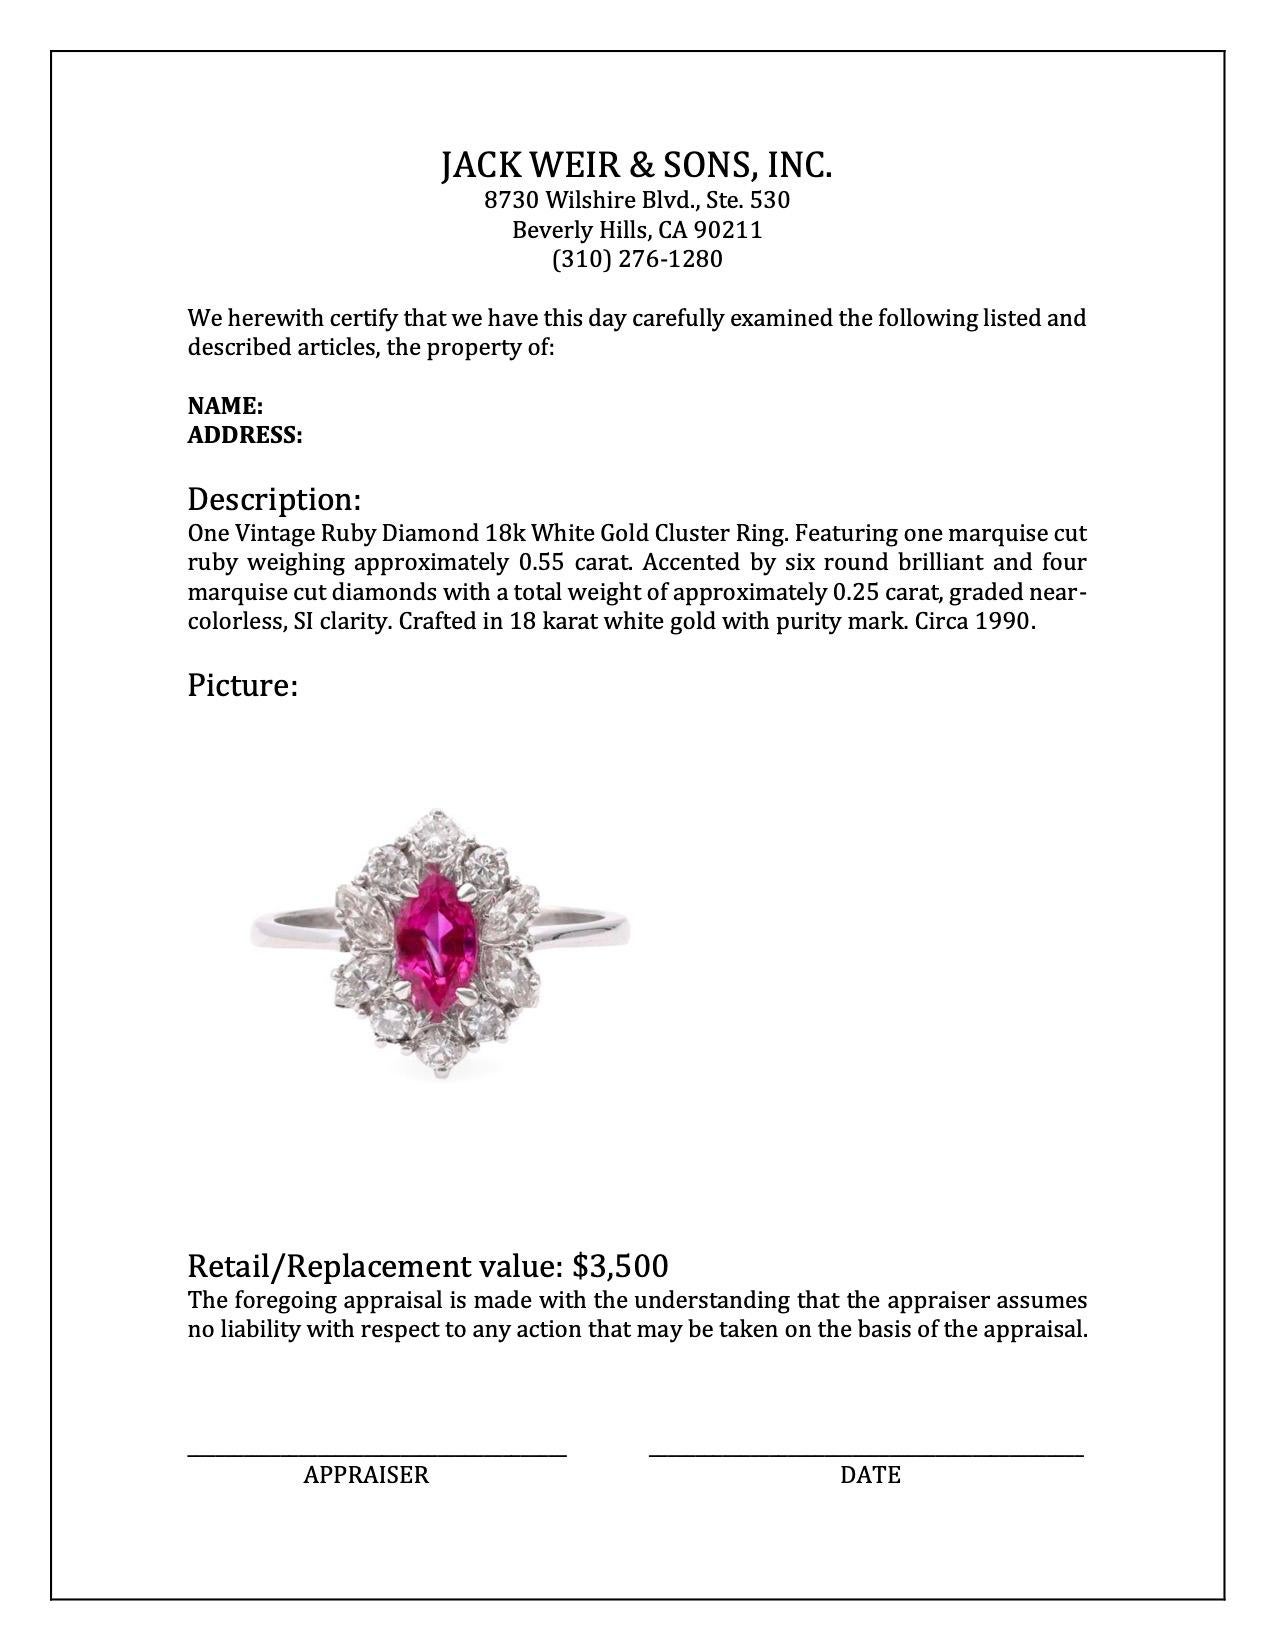 Women's or Men's Vintage Ruby Diamond 18k White Gold Cluster Ring For Sale